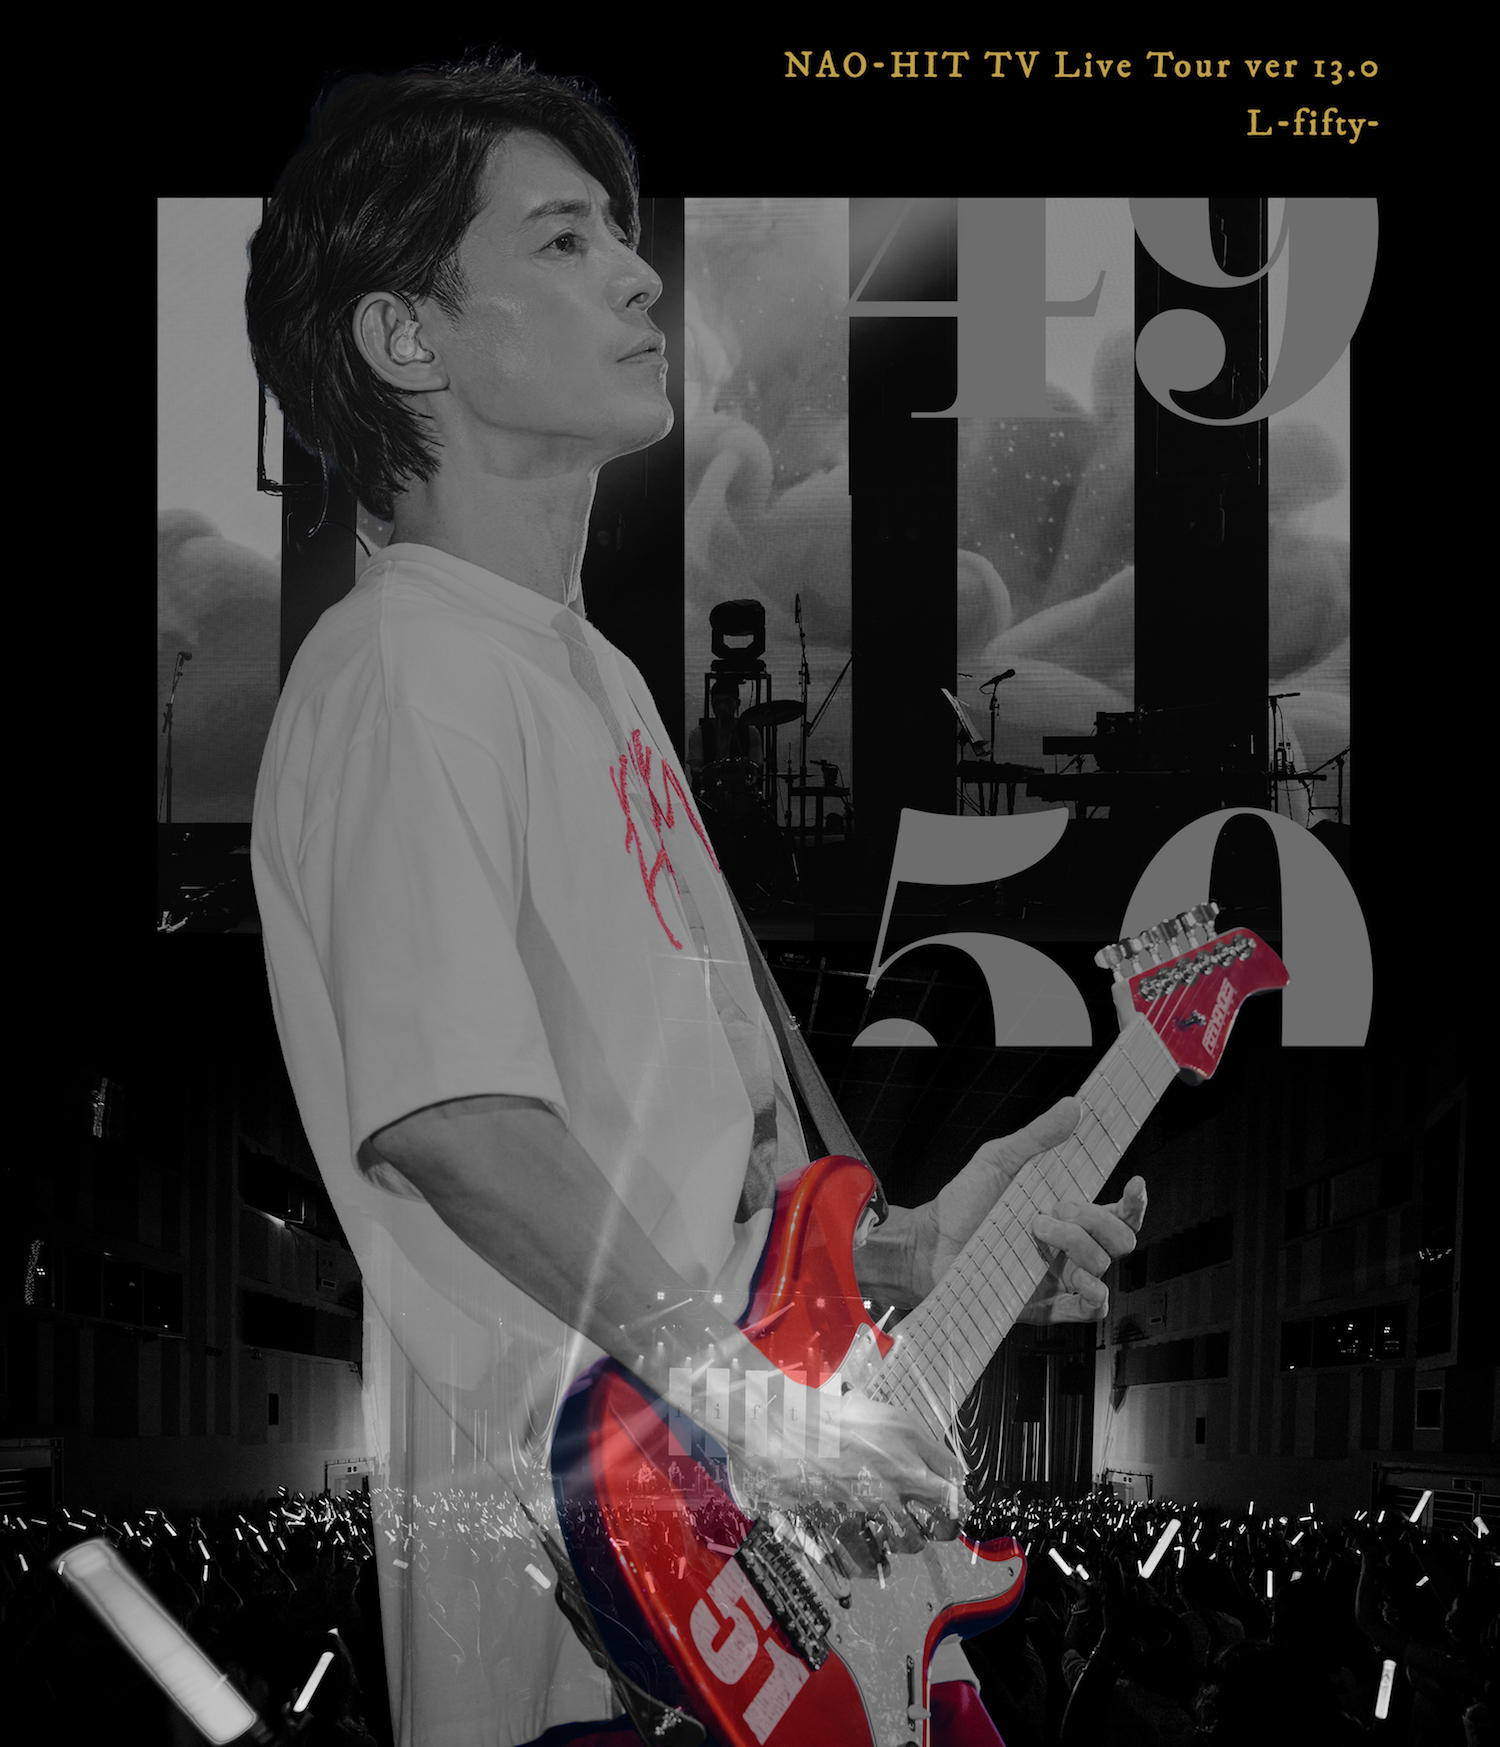 藤木直人、50歳の誕生日に開催したライブ「L -fifty-」を映像化 | Musicman